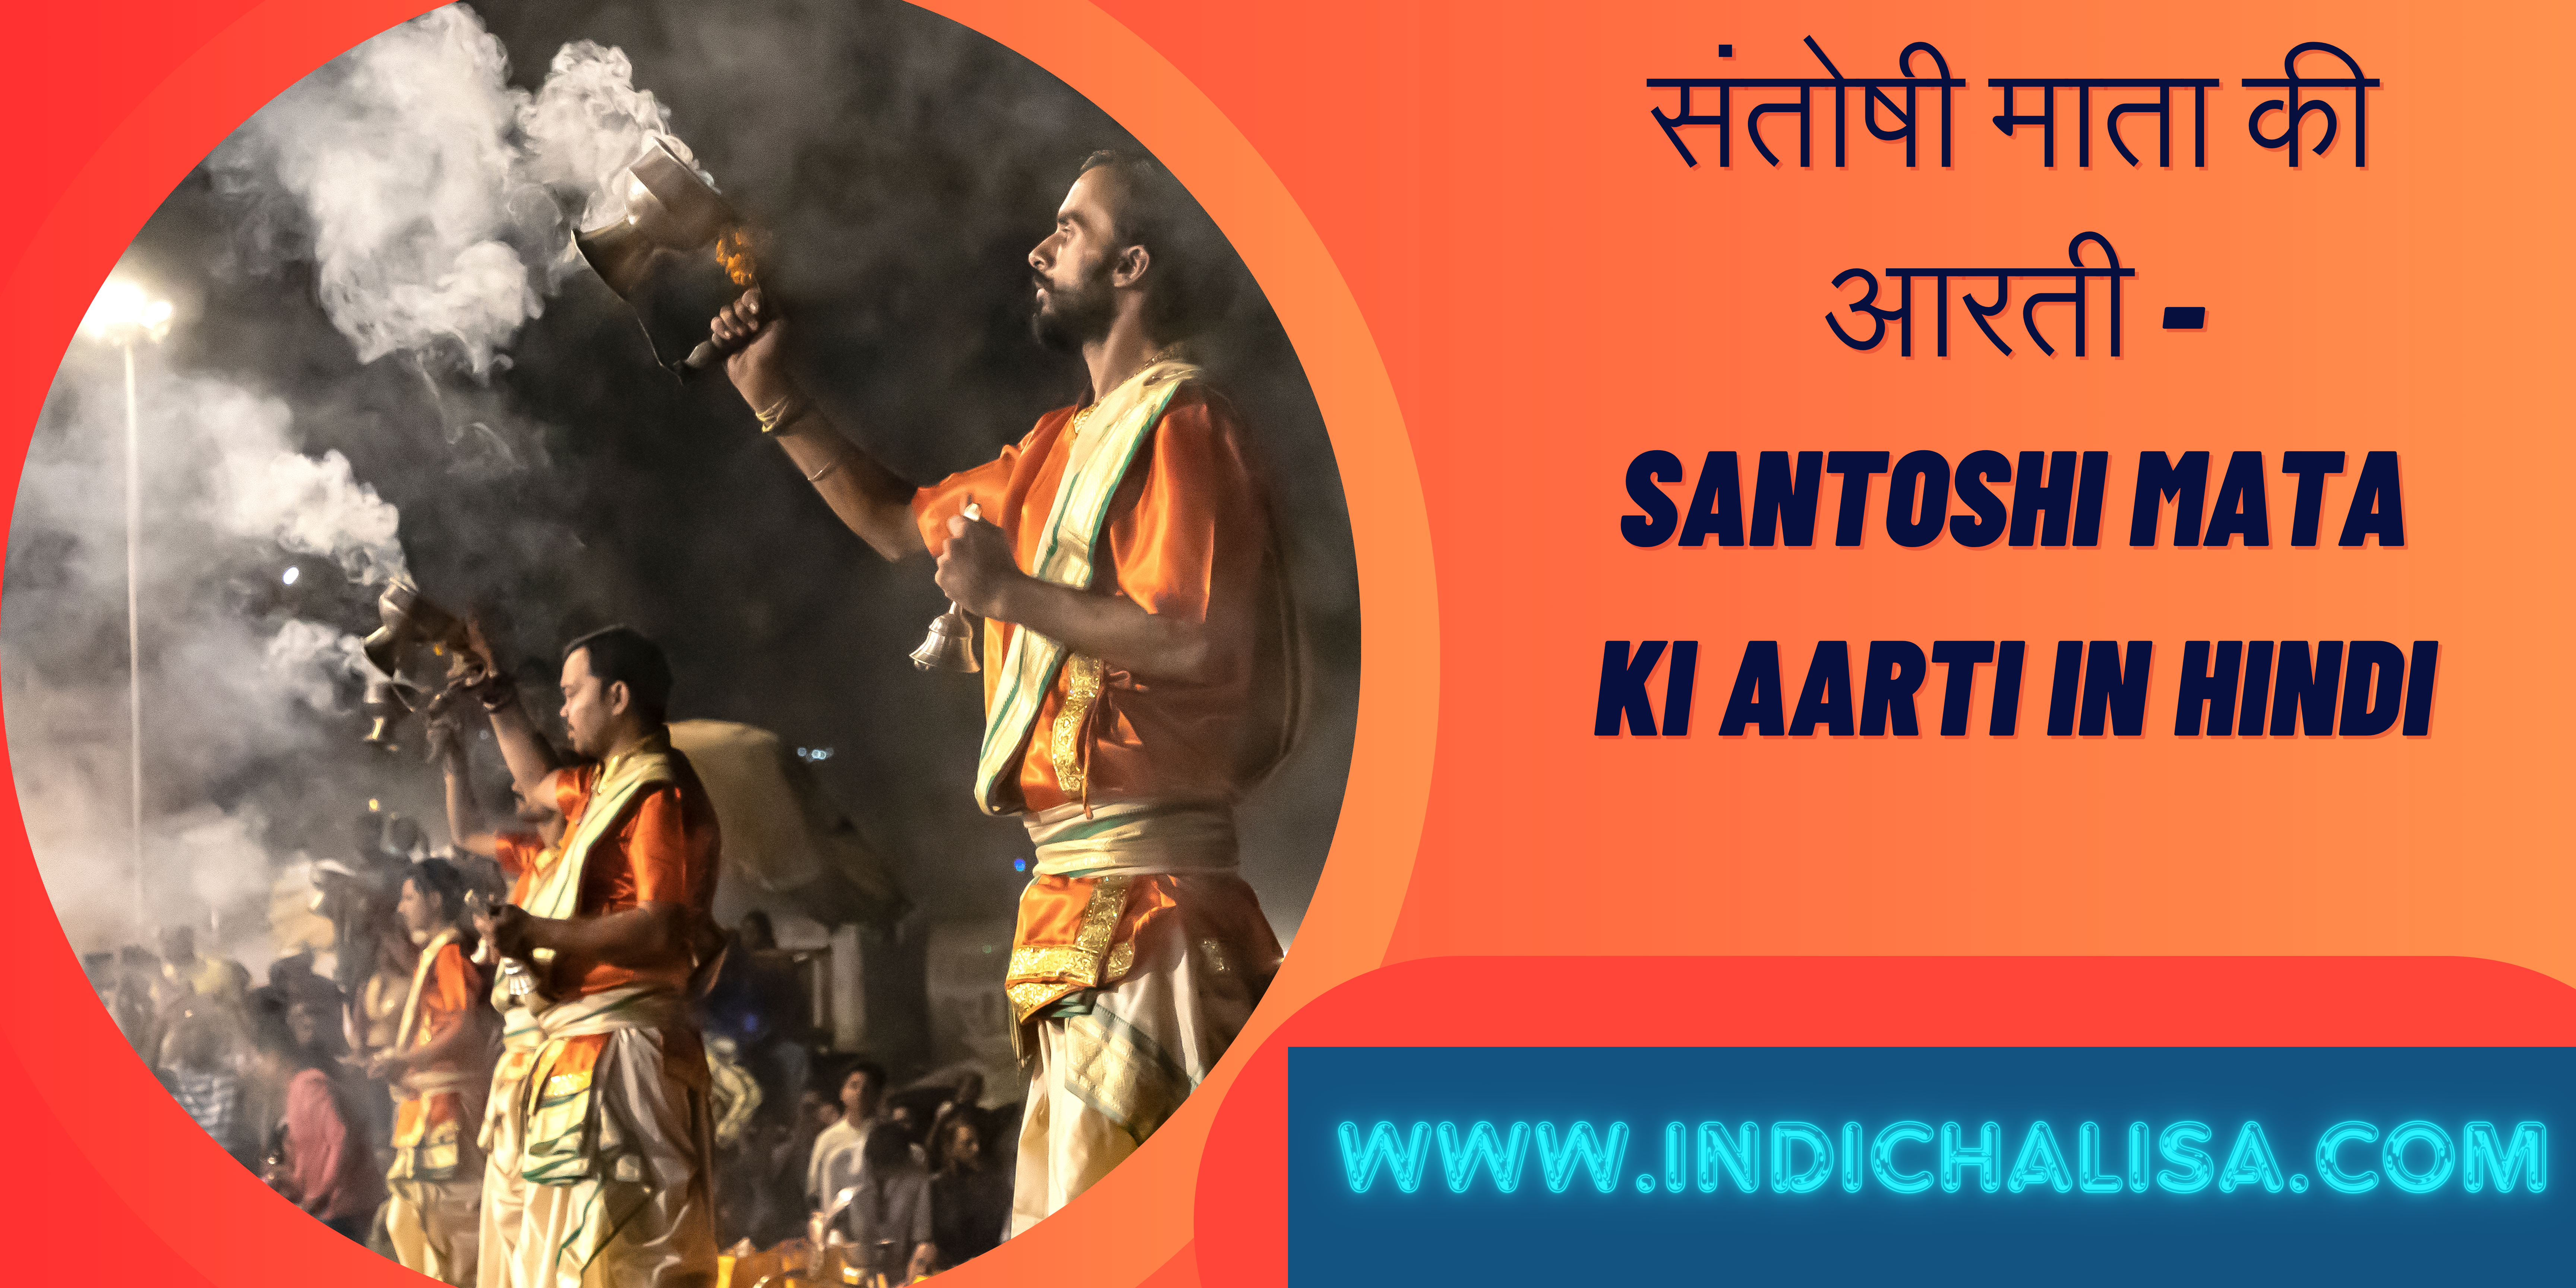 Santoshi Mata Ki Aarti In Hindi|Santoshi Mata Ki Aarti In Hindi|Indichalisa|Indichalisa